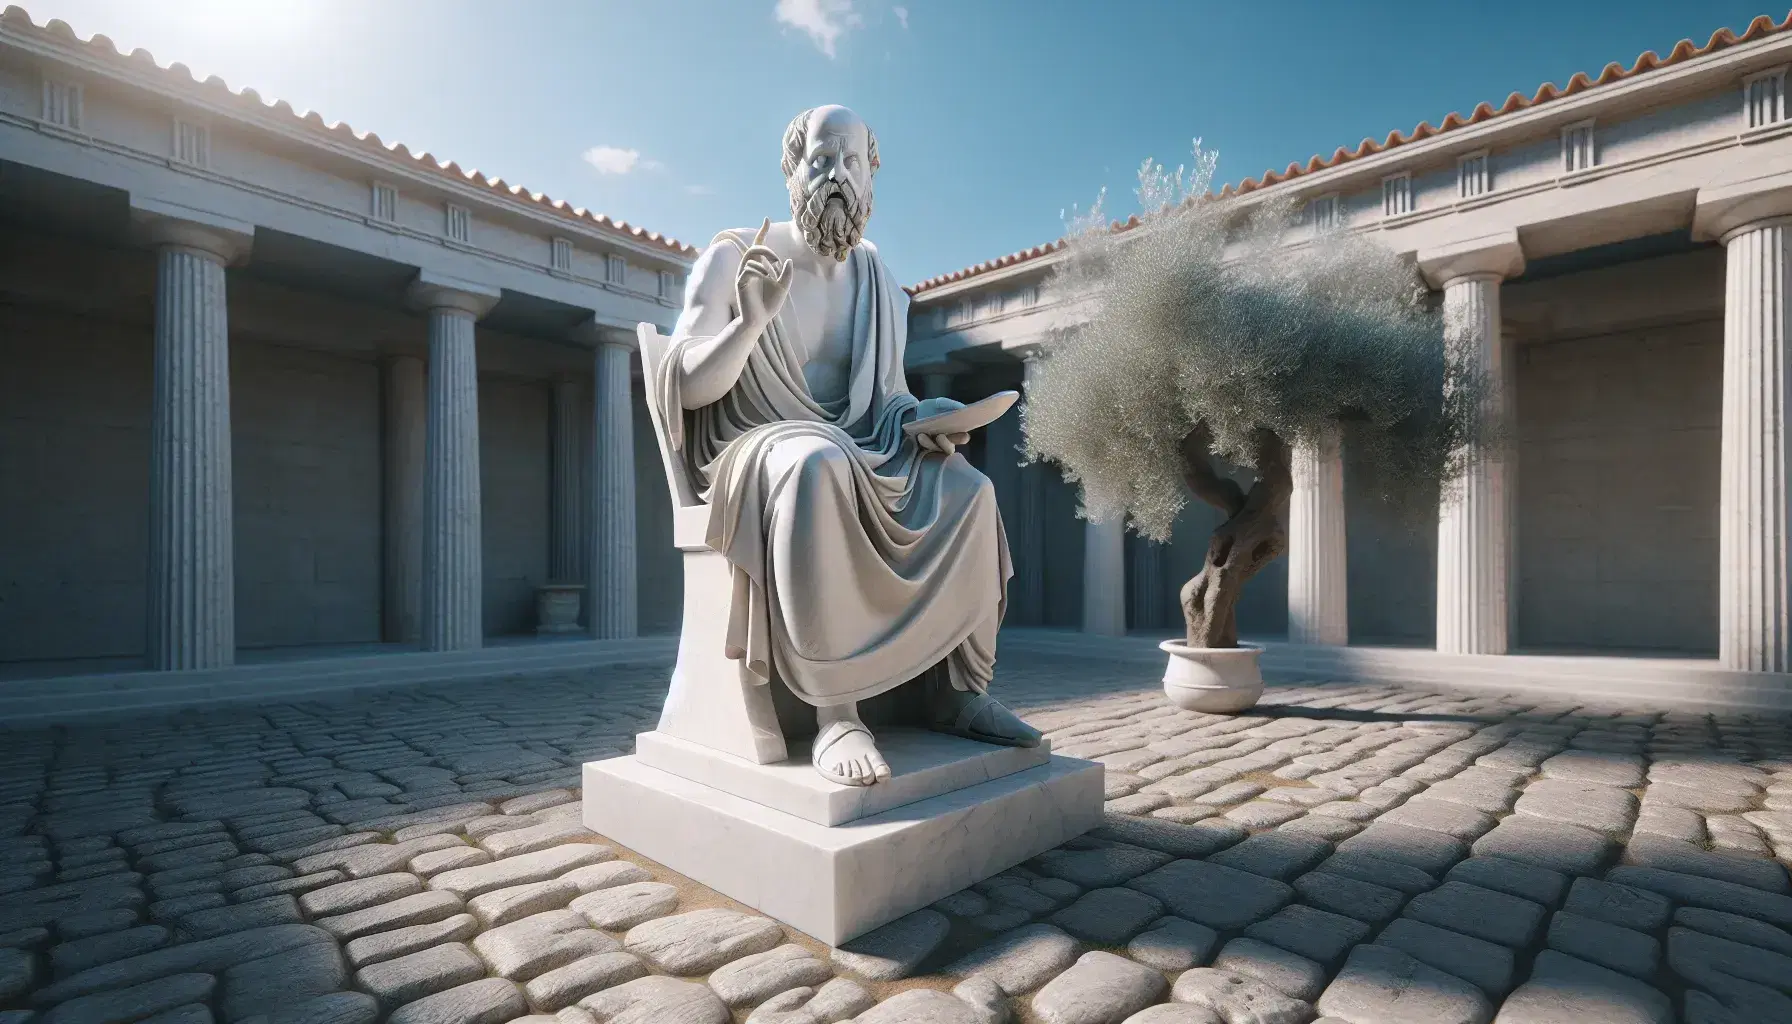 Estatua de mármol blanco de Sócrates con la mano izquierda levantada en un jardín clásico con columnas y un olivo, bajo un cielo azul despejado.